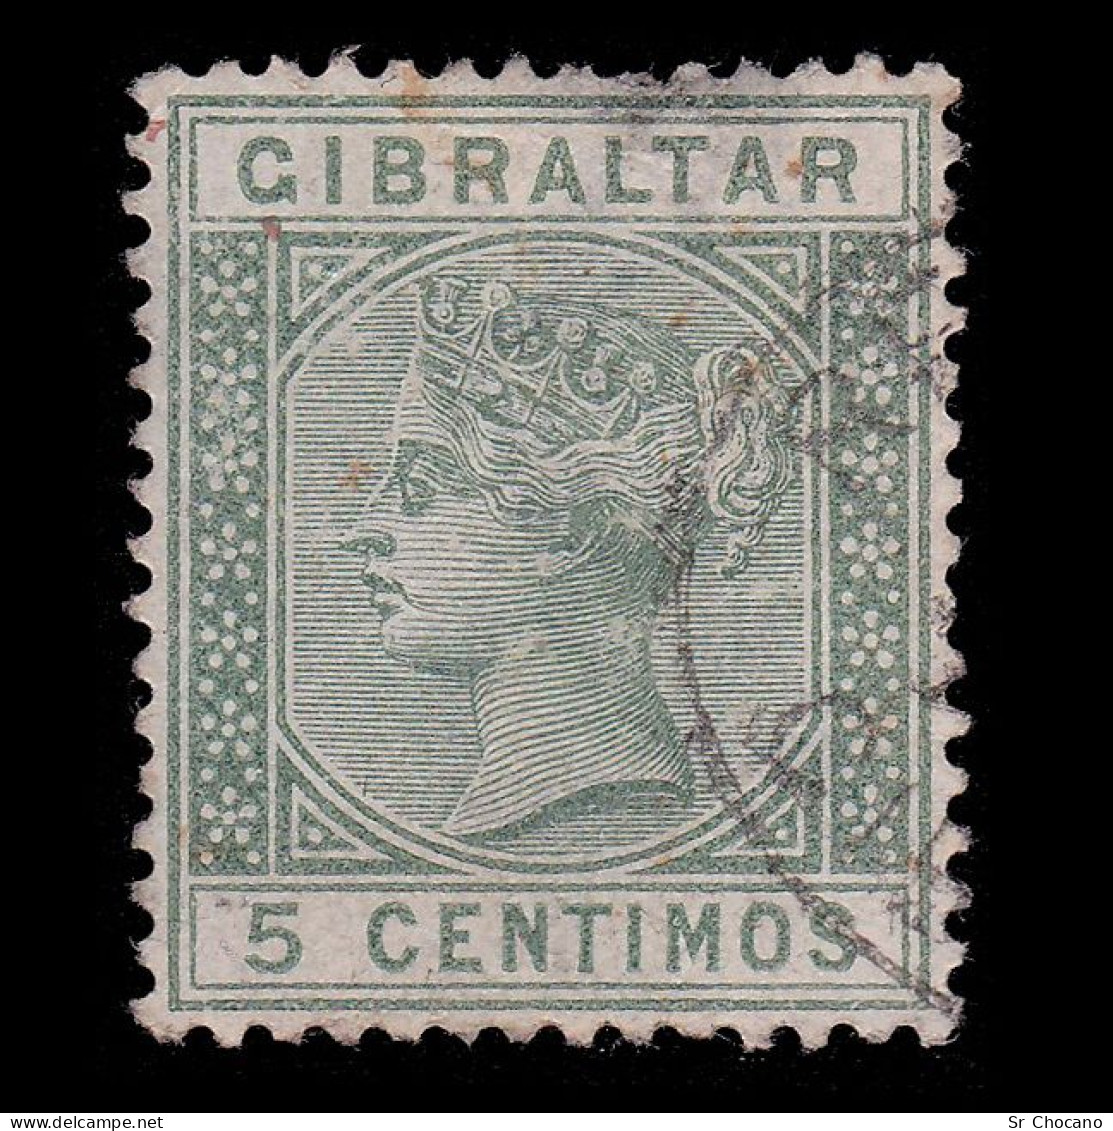 GIBRALTAR STAMP.1889.QV.5c.SG 22.USED.Crown CA. - Gibraltar